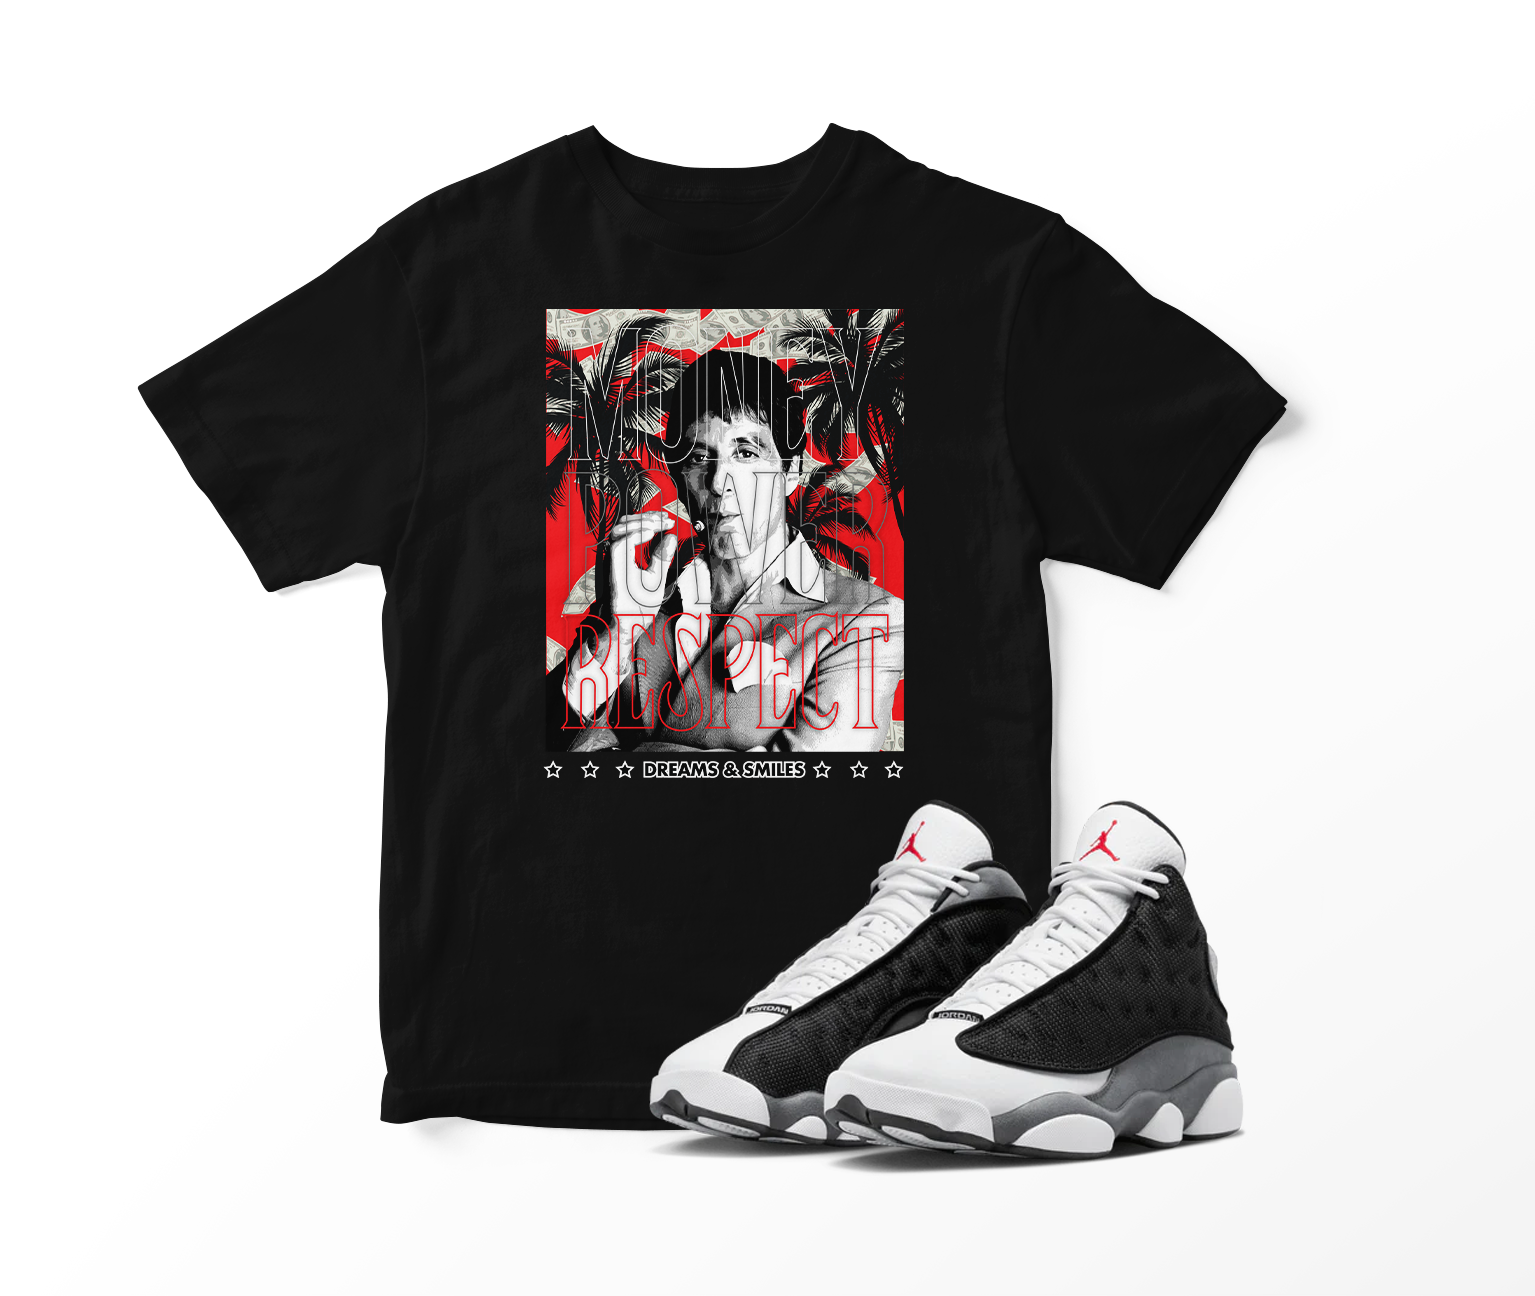 'Money, Power, Respect' Custom Graphic Short Sleeve T-Shirt To Match Air Jordan 13 Black Flint